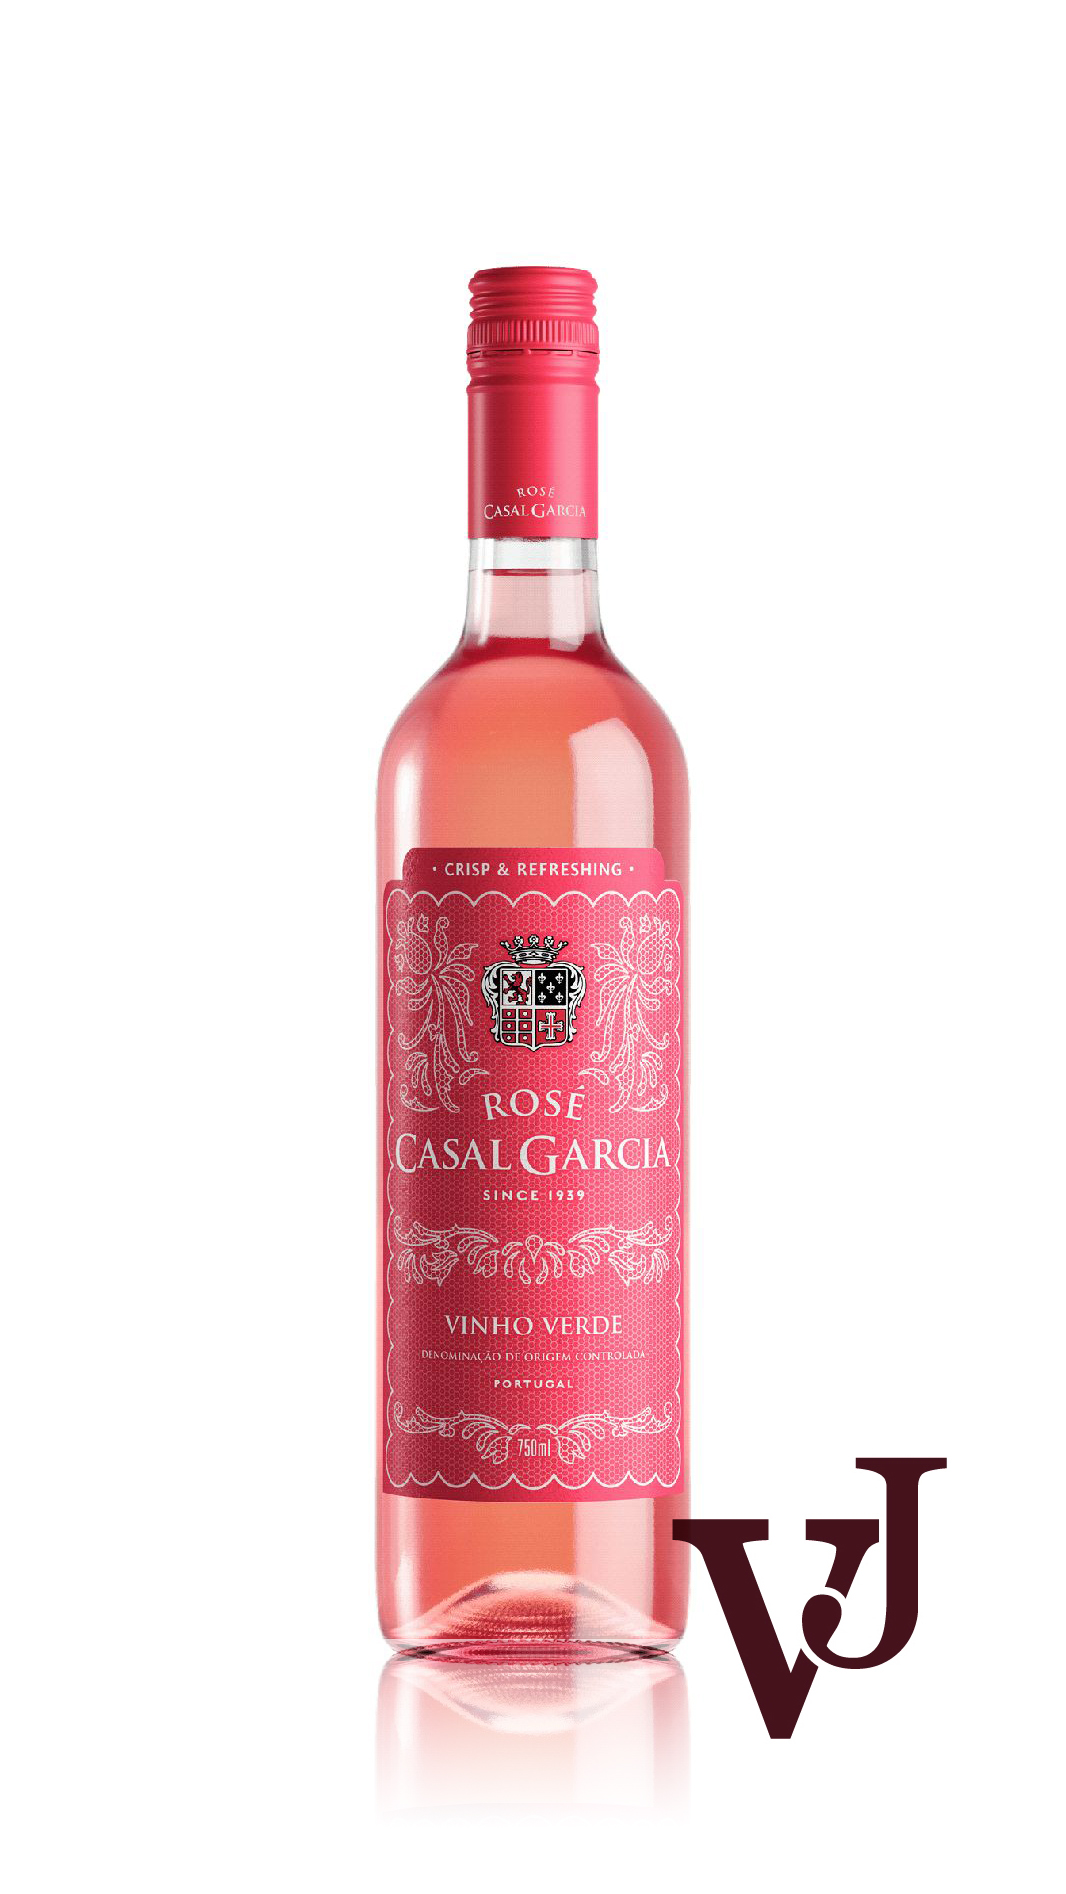 Rosé Vin - Casal Garcia artikel nummer 5756901 från producenten Aveleda från området Portugal